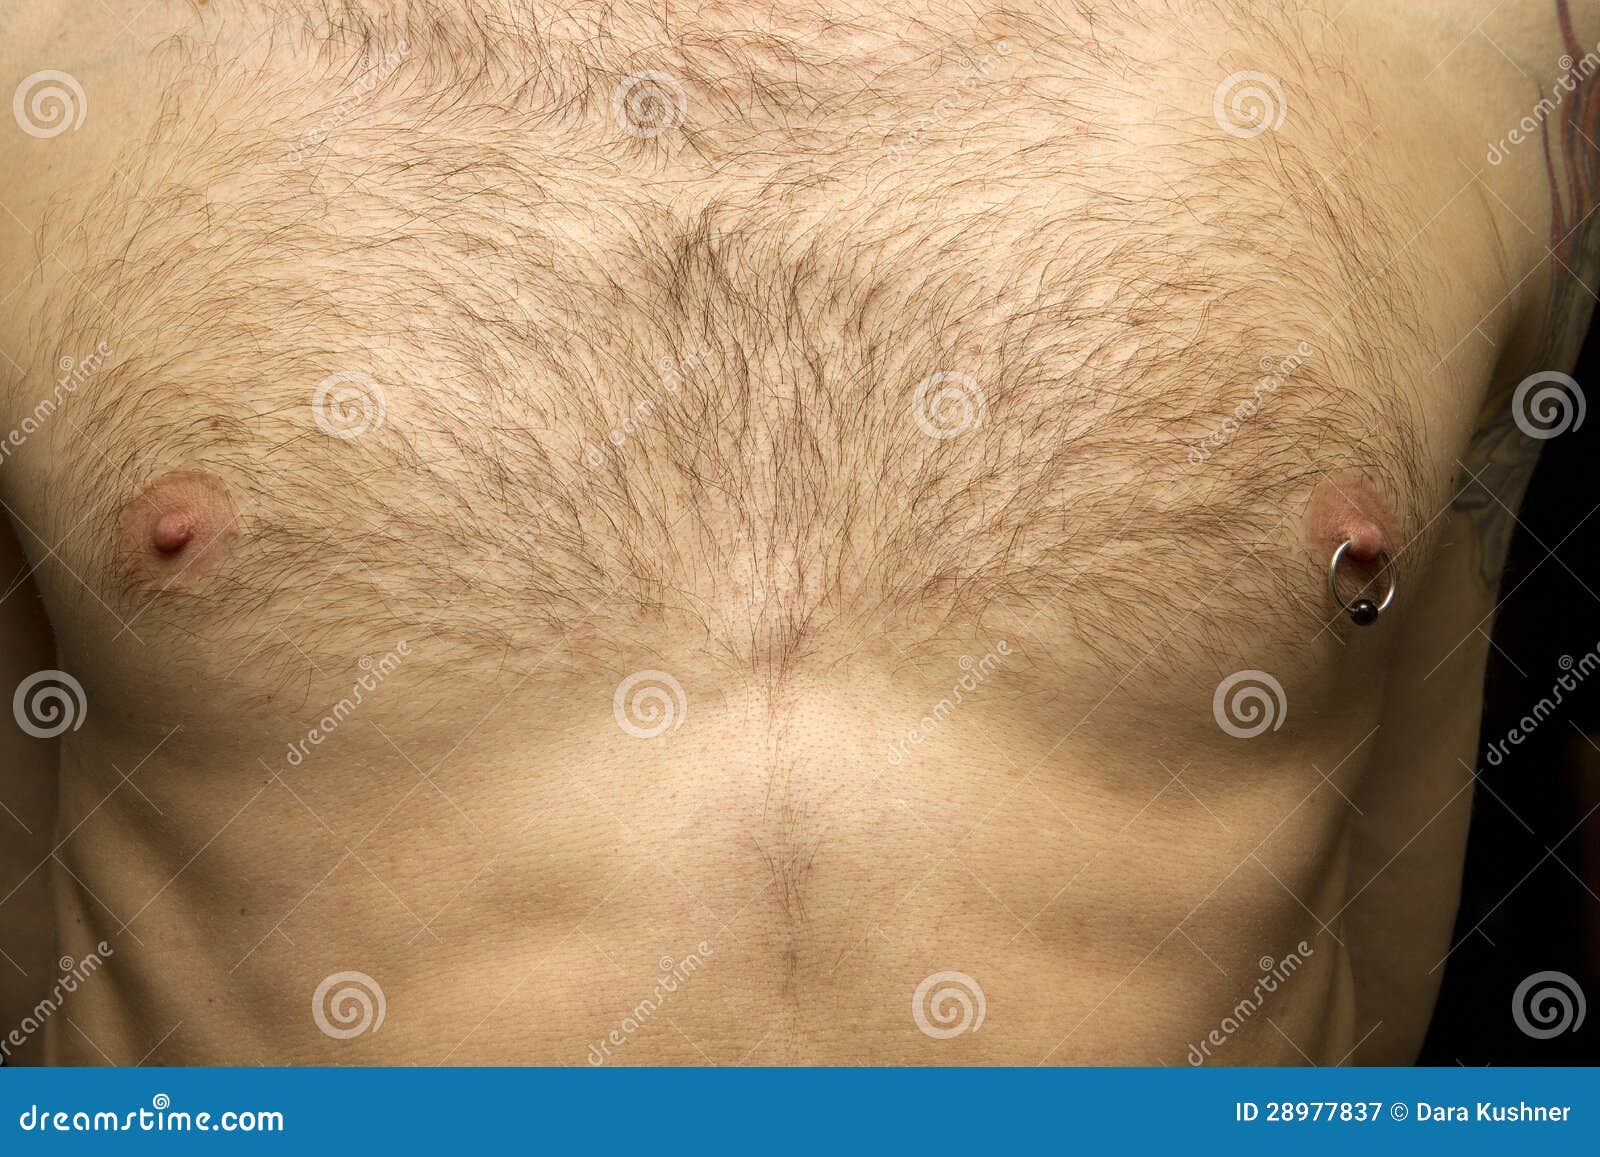 волосы на груди у мужчин к 30 годам фото 118